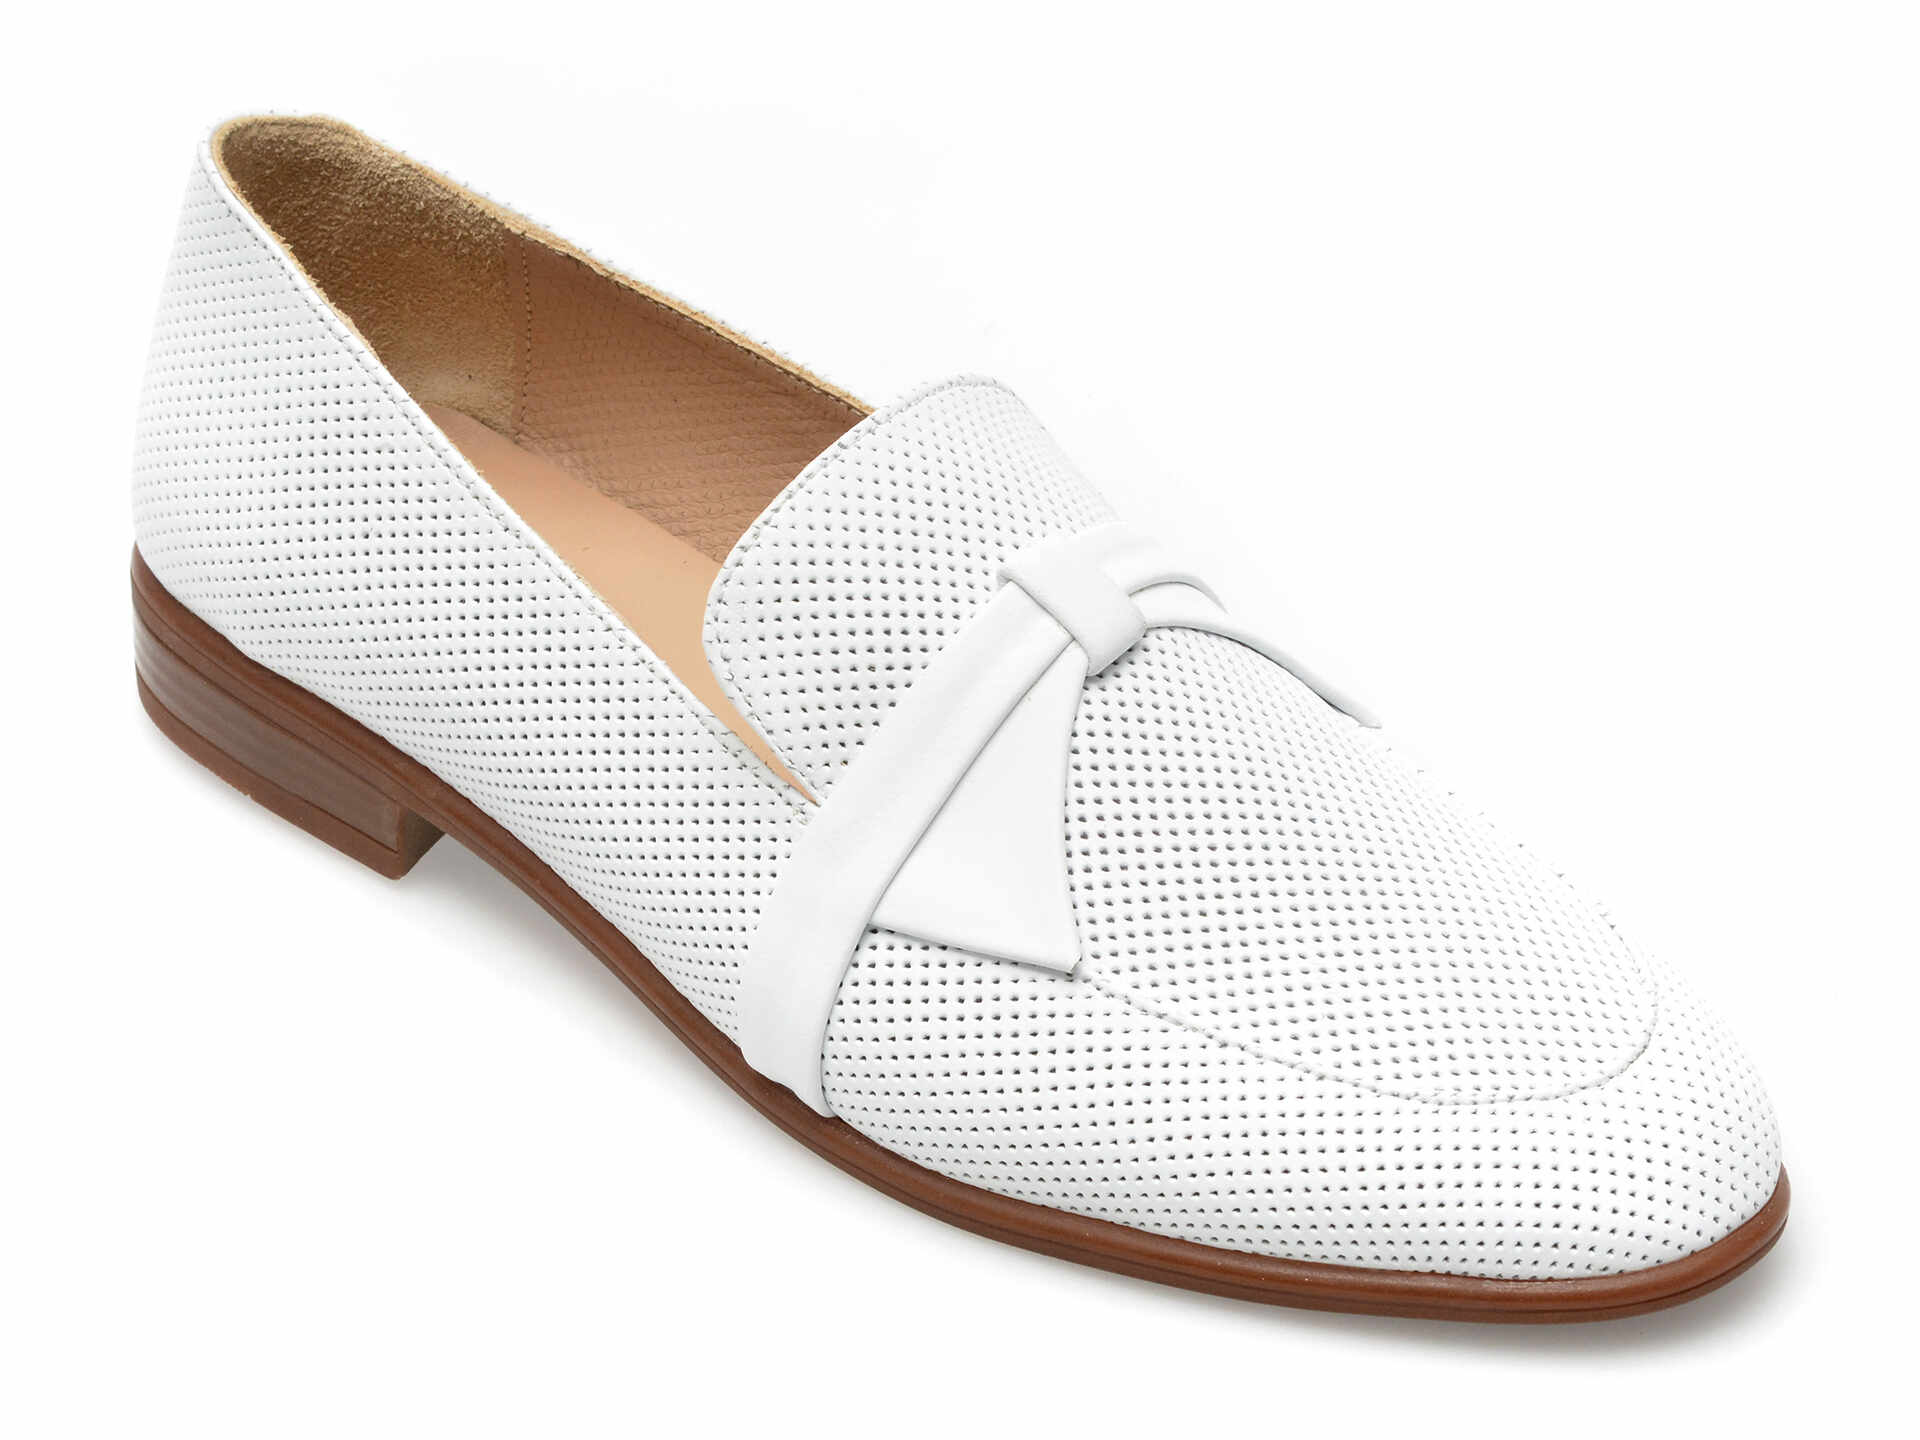 Pantofi GRYXX albi, 422219, din piele naturala